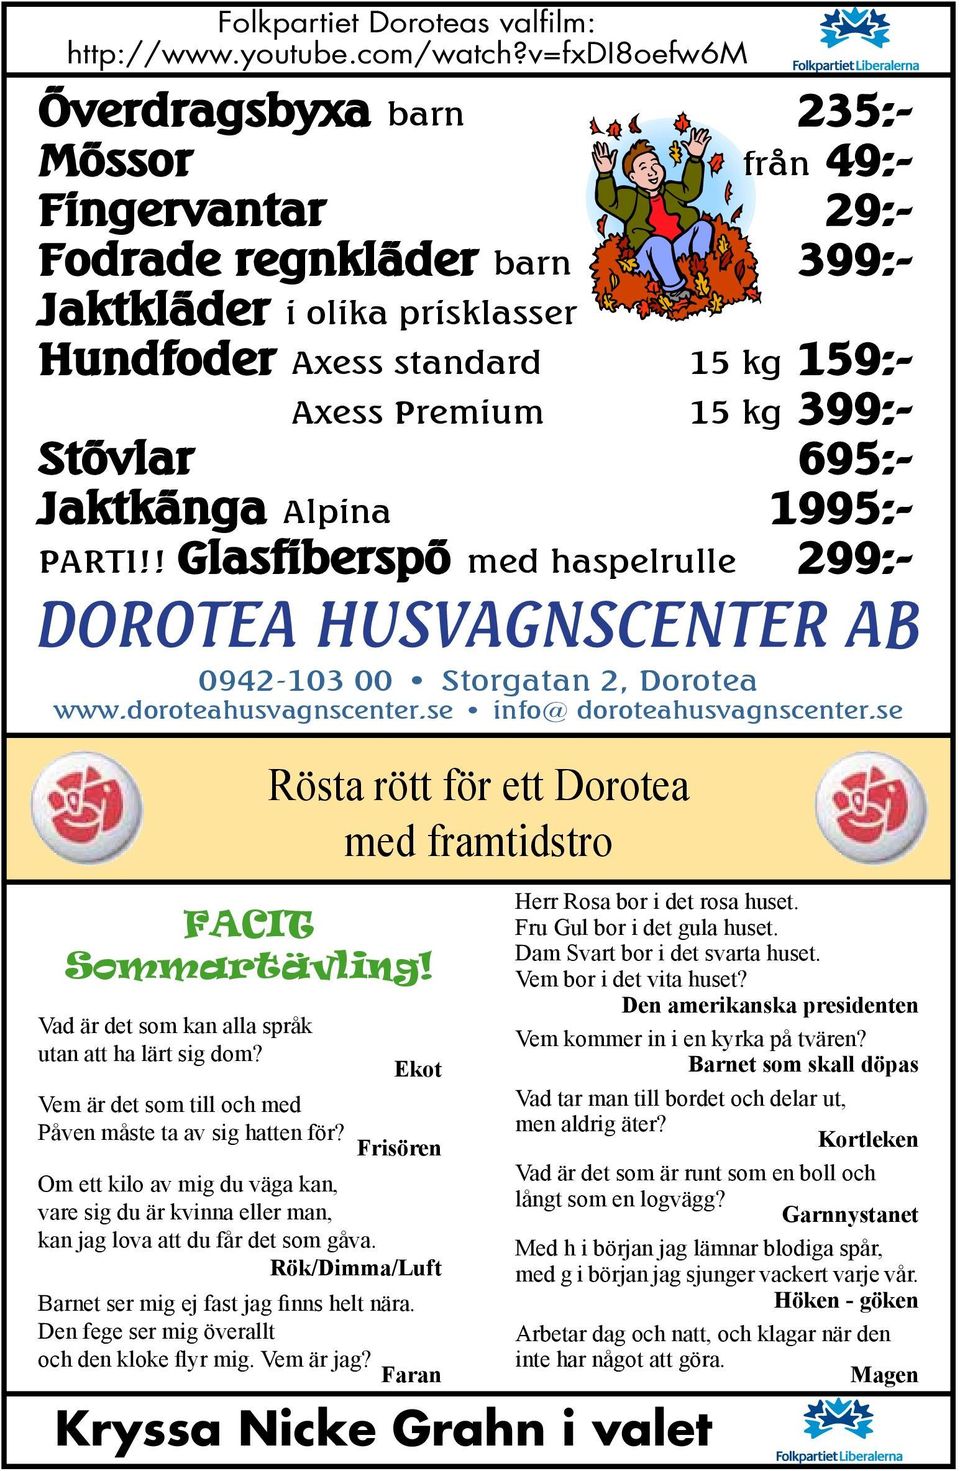 Stövlar 695:- Jaktkänga Alpina 1995:- PARTI!! Glasfiberspö med haspelrulle 299:- 0942-103 00 Storgatan 2, Dorotea www.doroteahusvagnscenter.se info@ doroteahusvagnscenter.se Facit Sommartävling!